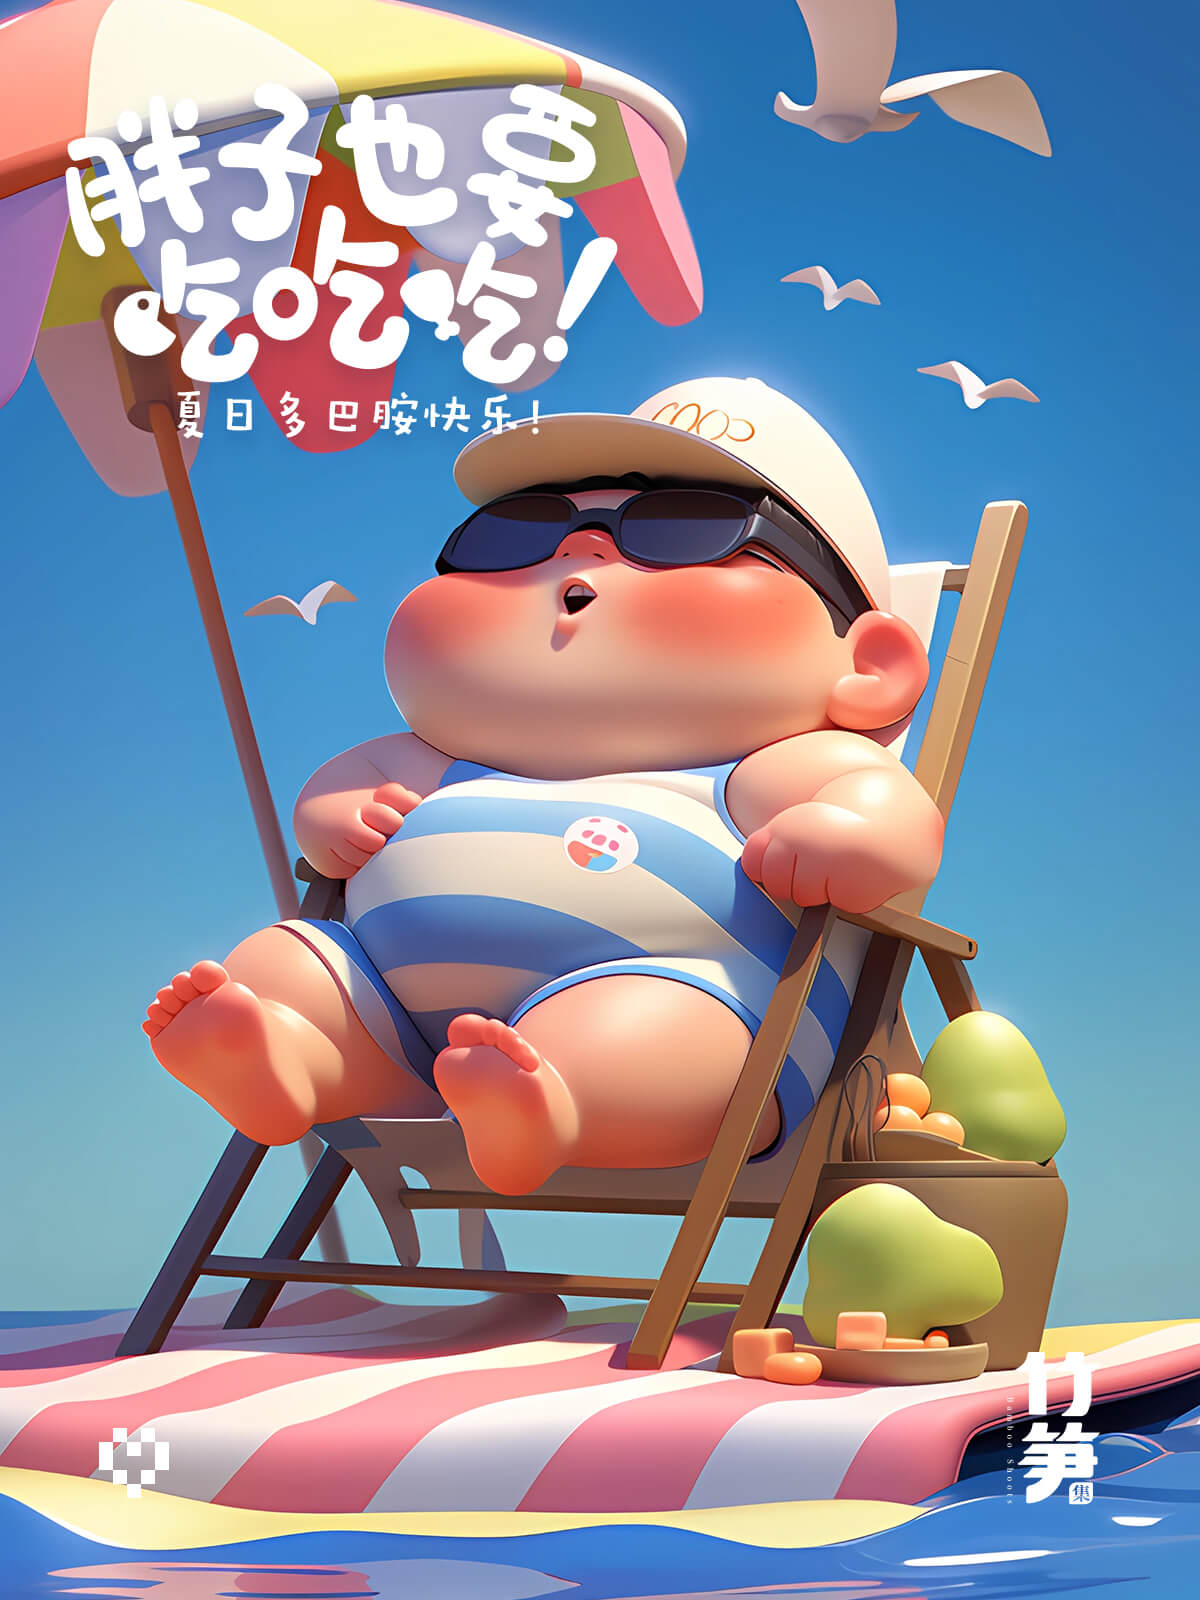 夏日海滩插画集锦！8 张快乐胖男孩 Prompt 灵感！